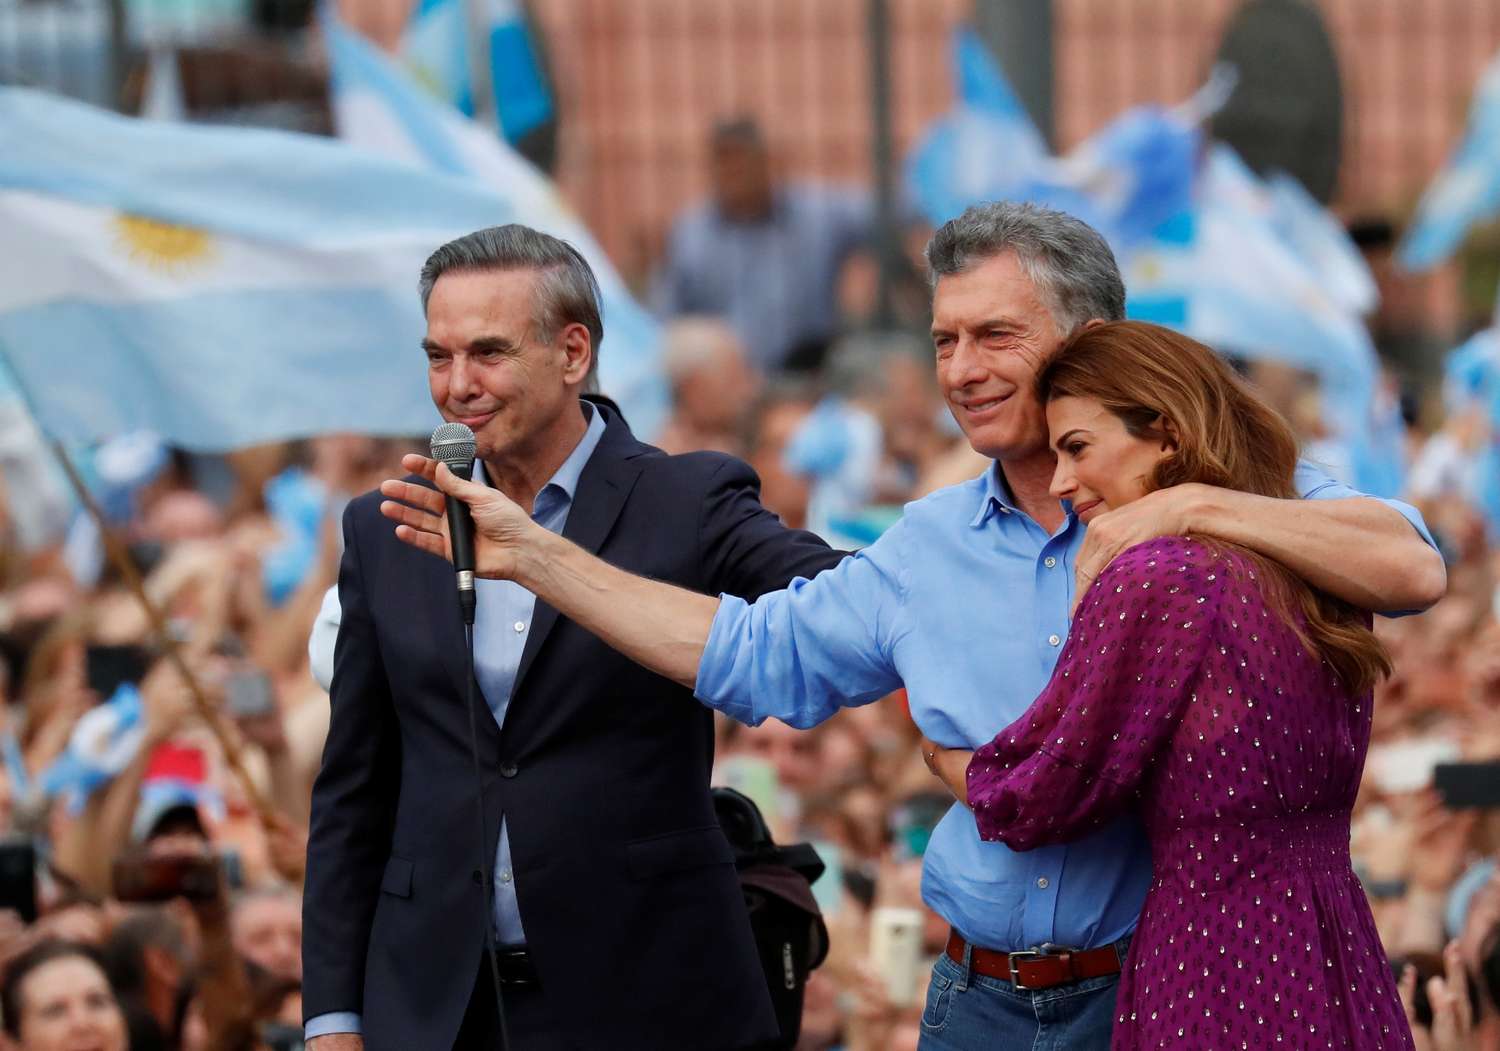  Macri: "Fernández va a encontrar una oposición constructiva, no destructiva"